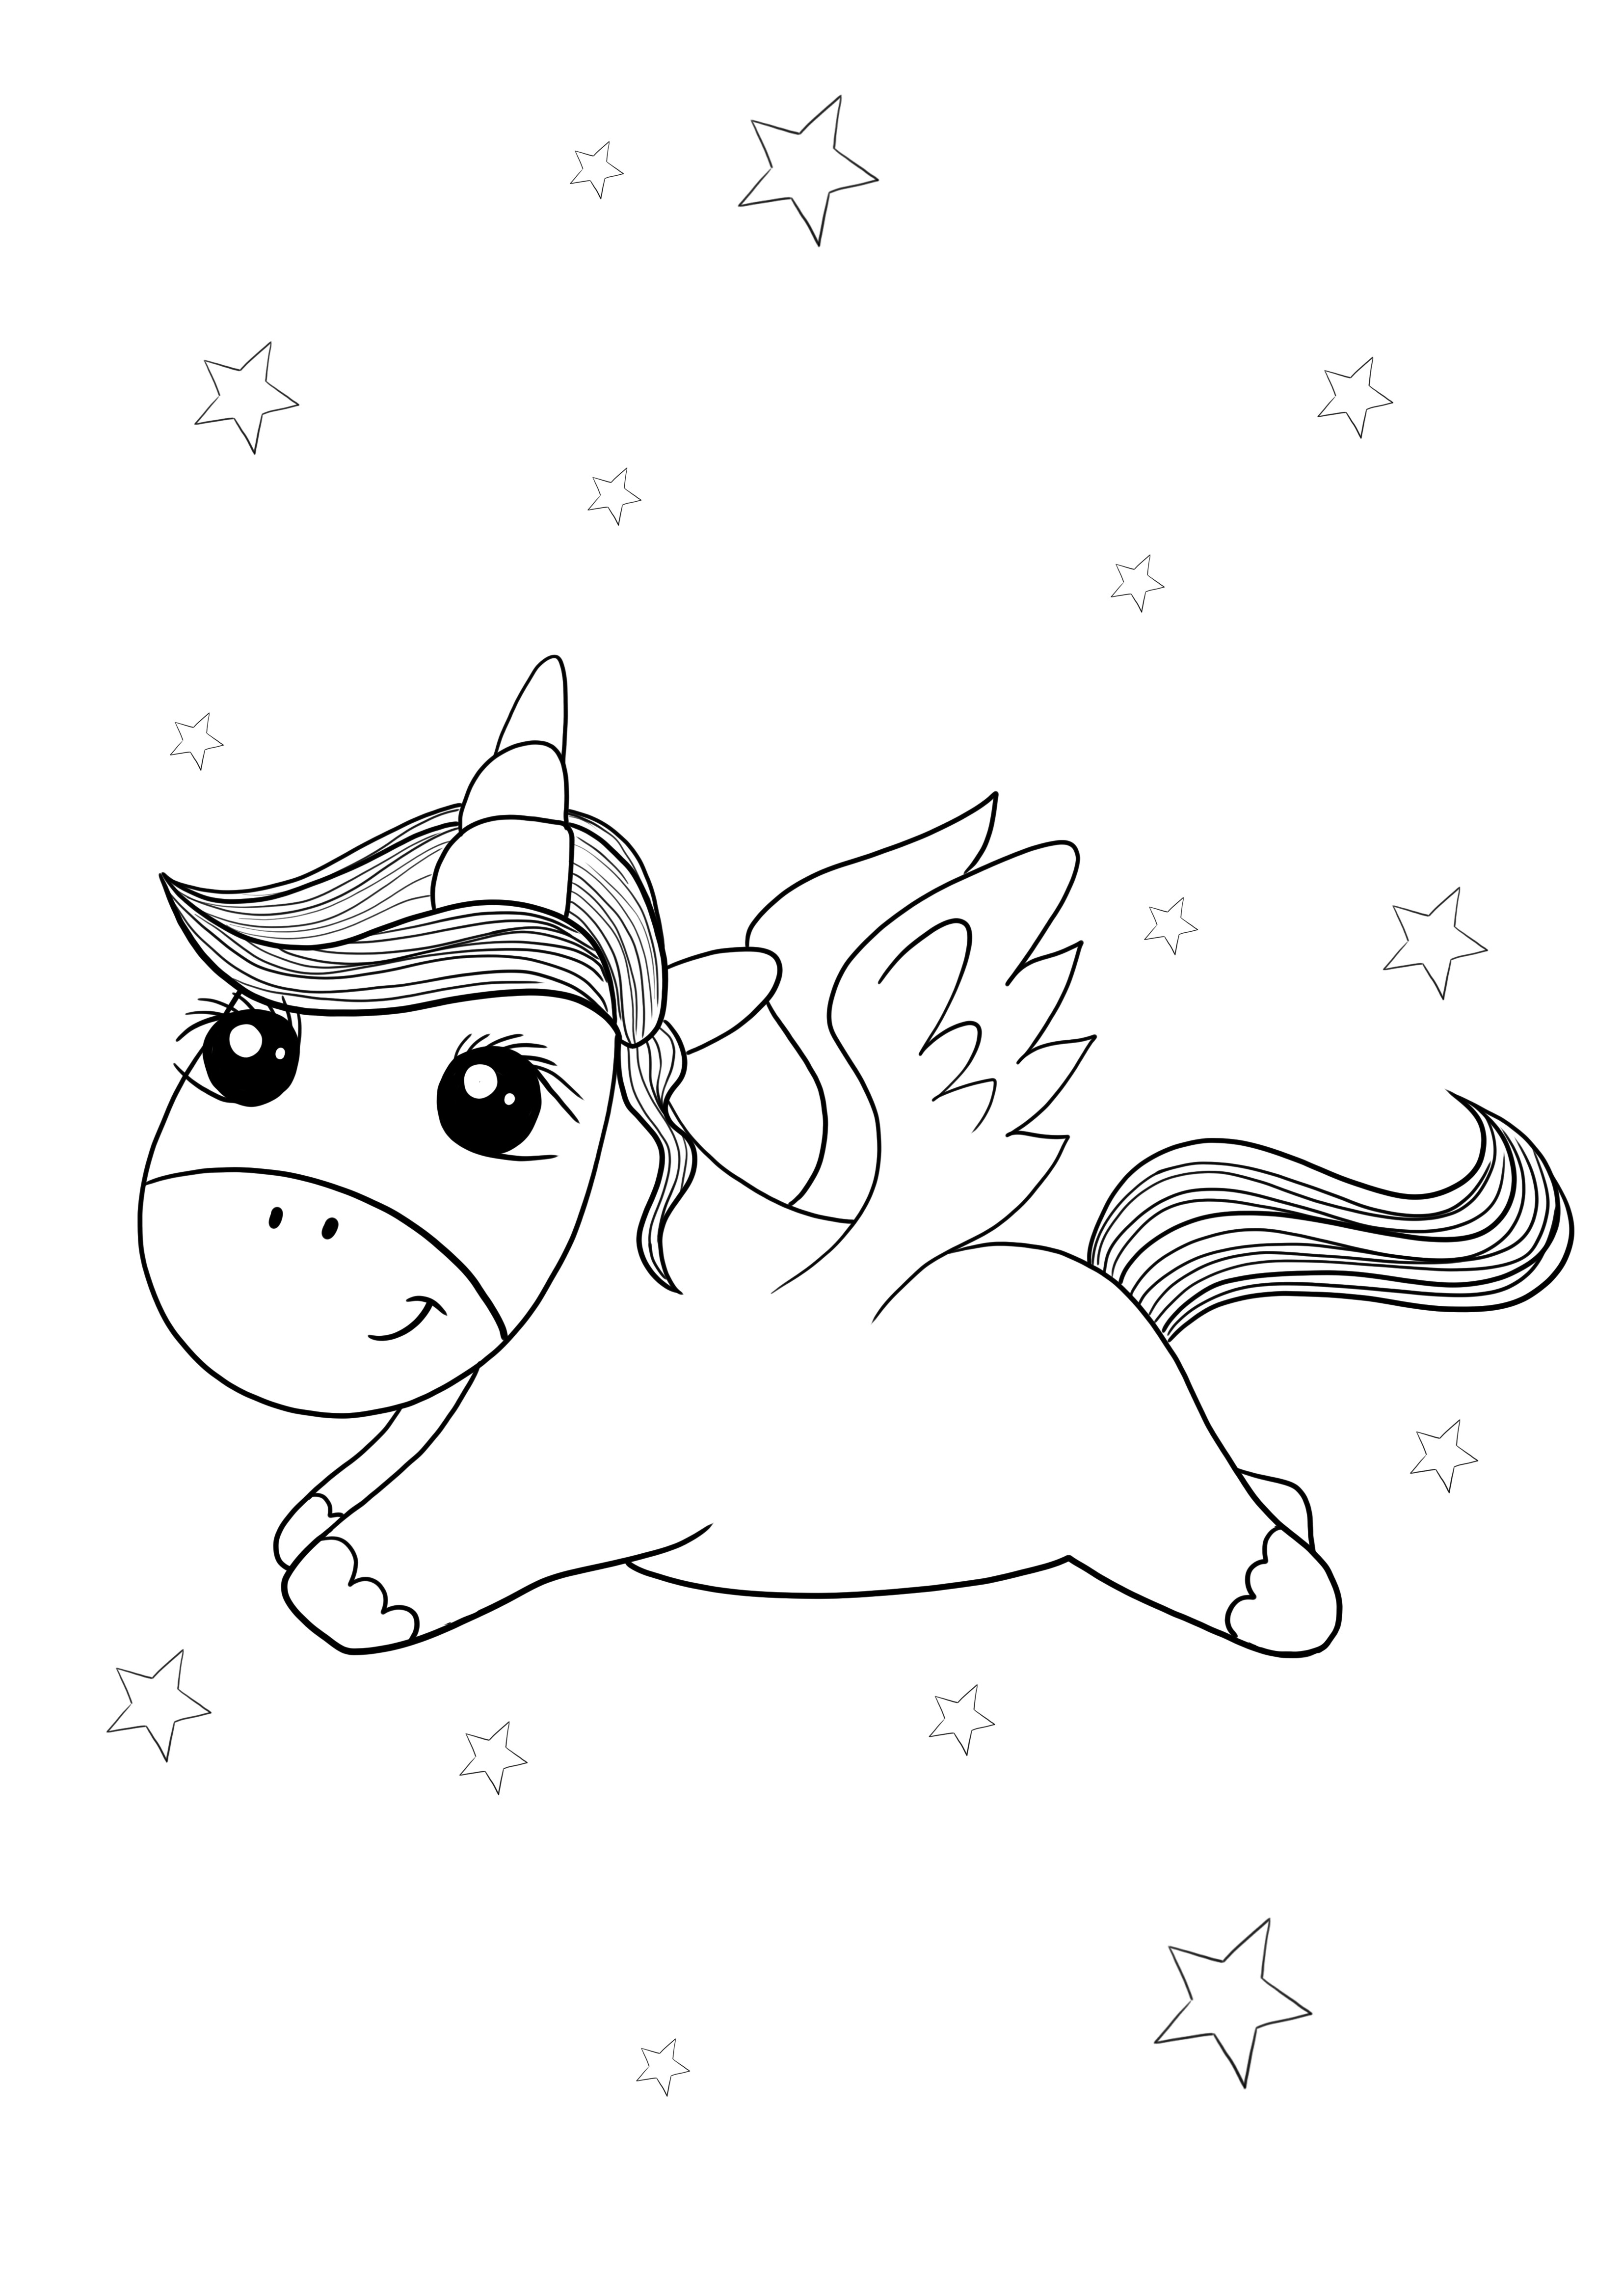 Seekor unicorn Pegasus terbang di atas langit freebie untuk dicetak atau disimpan untuk nanti